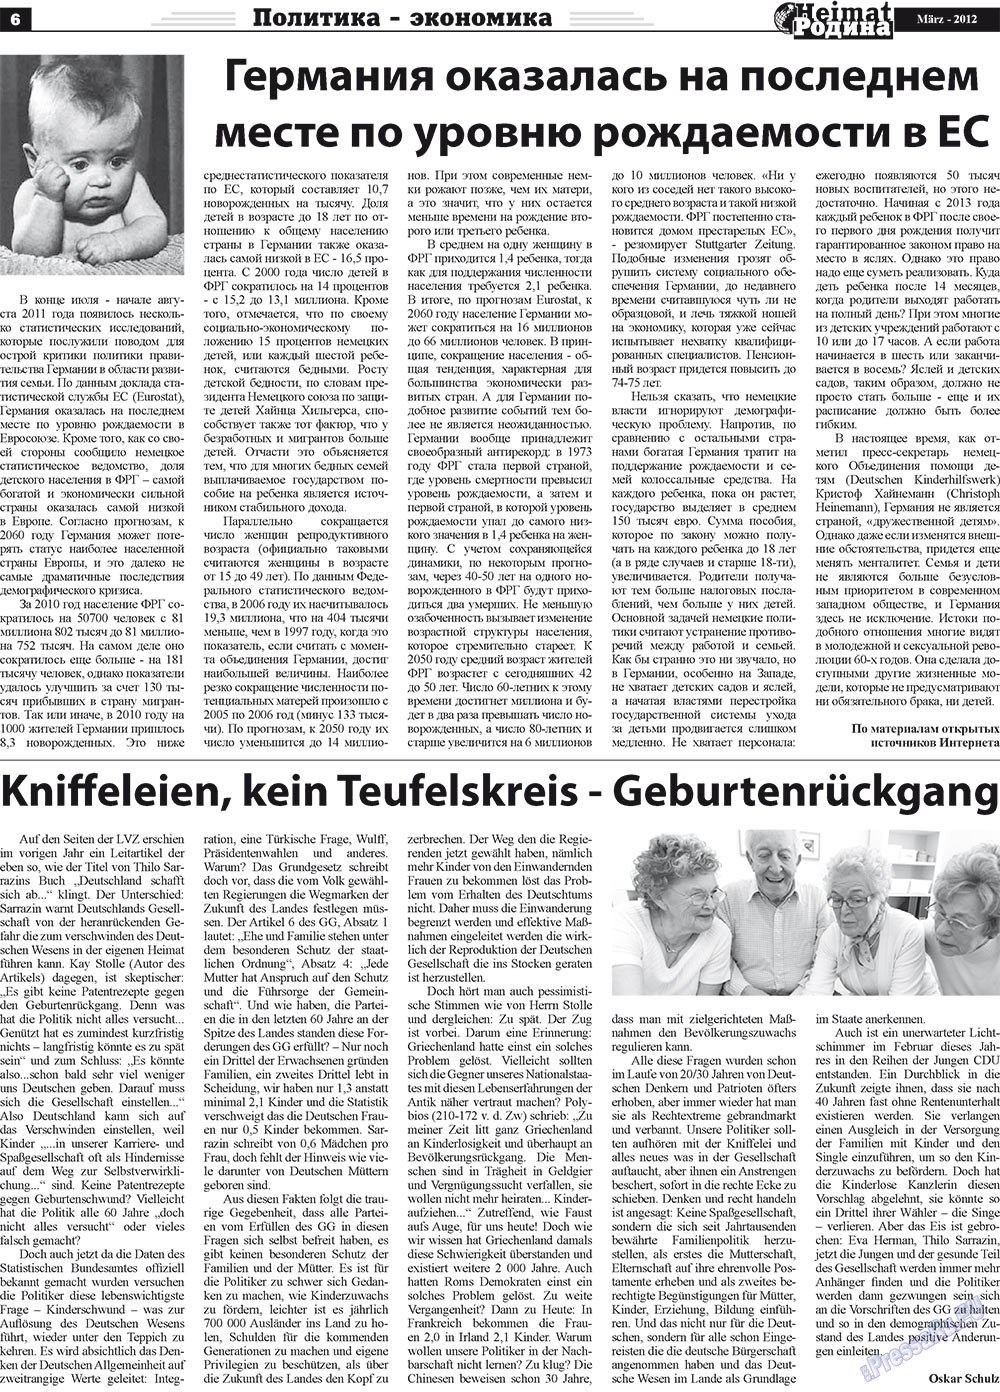 Heimat-Родина (газета). 2012 год, номер 3, стр. 6